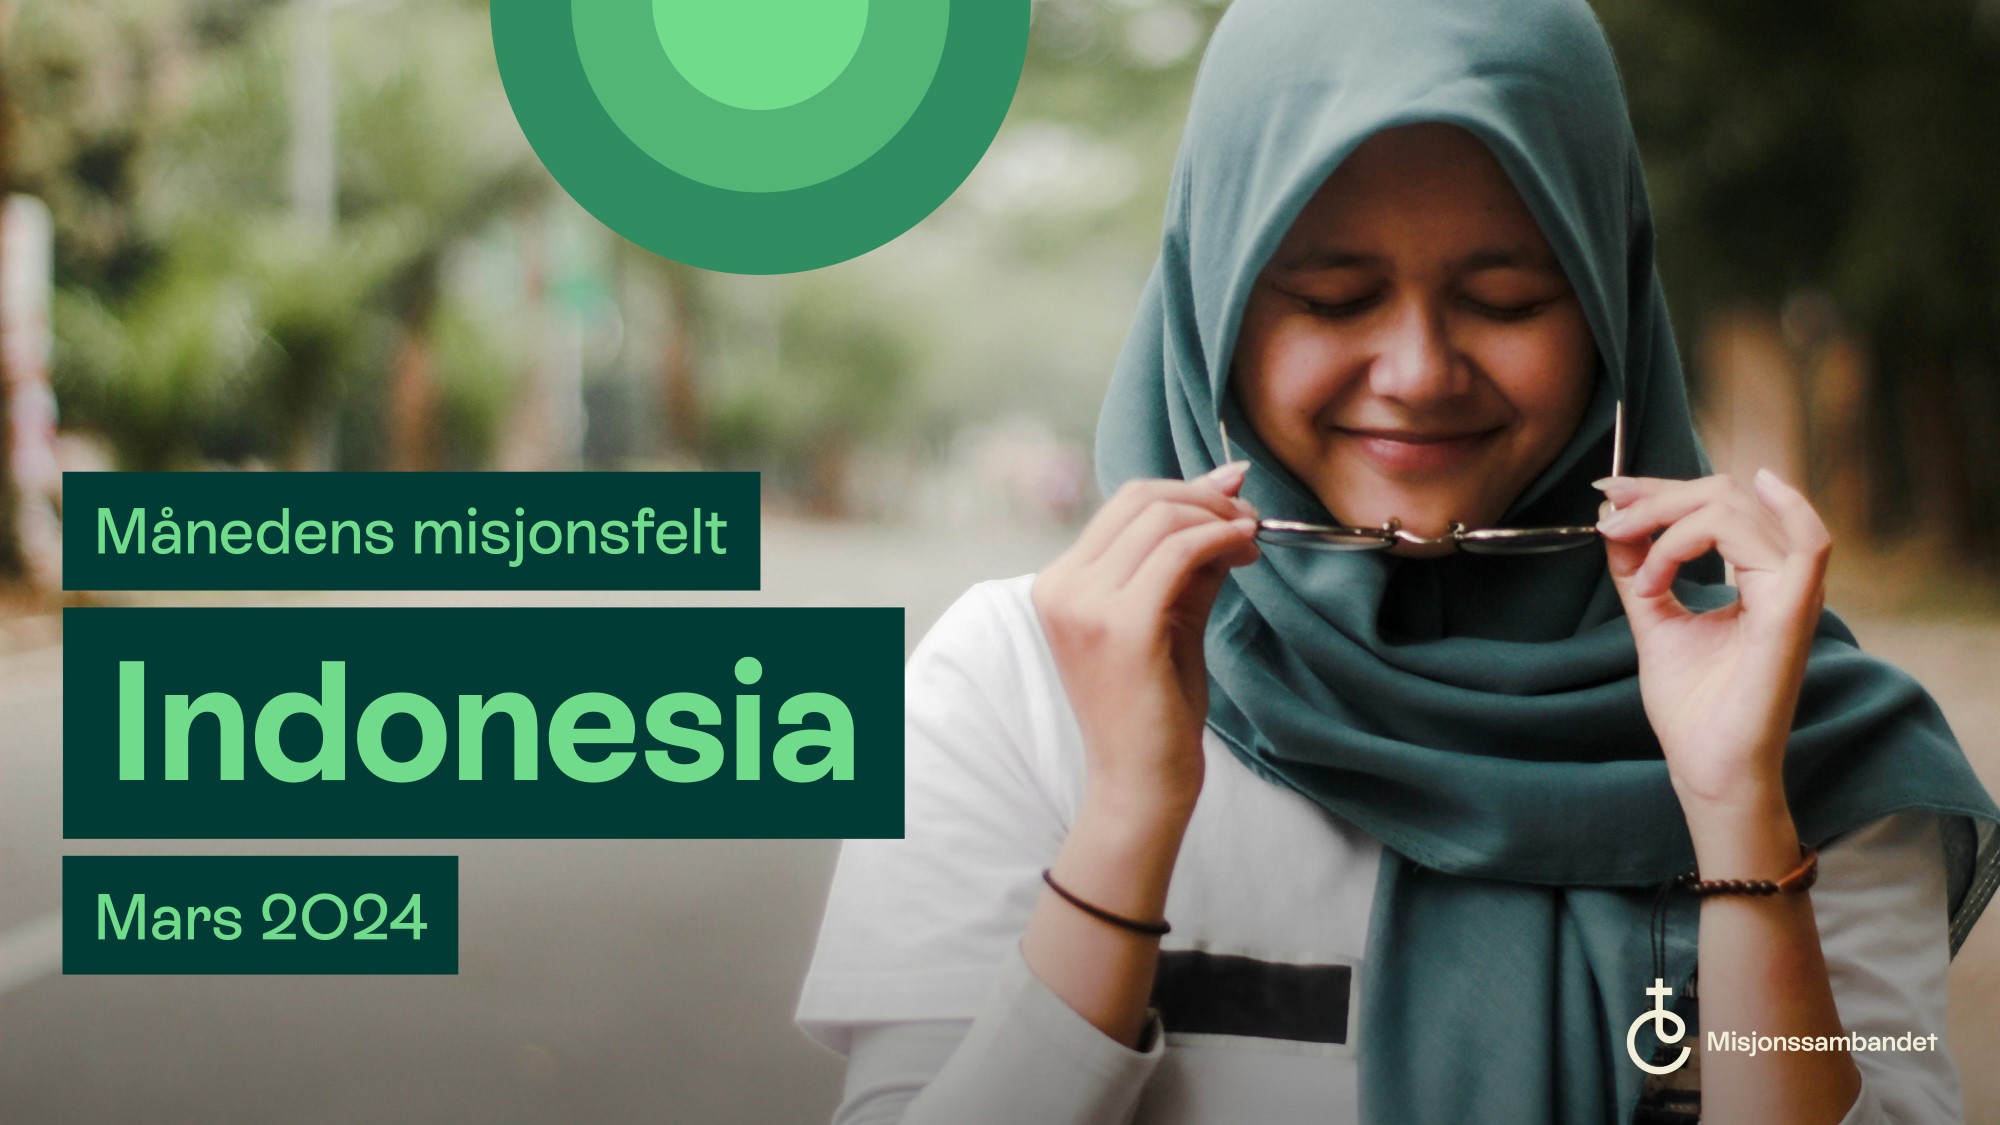 Tekstplakat månedens misjonsfelt mars 2024 Indonesia. Bakgrunnsbilde: Indonesisk kvinne med grønt sjal